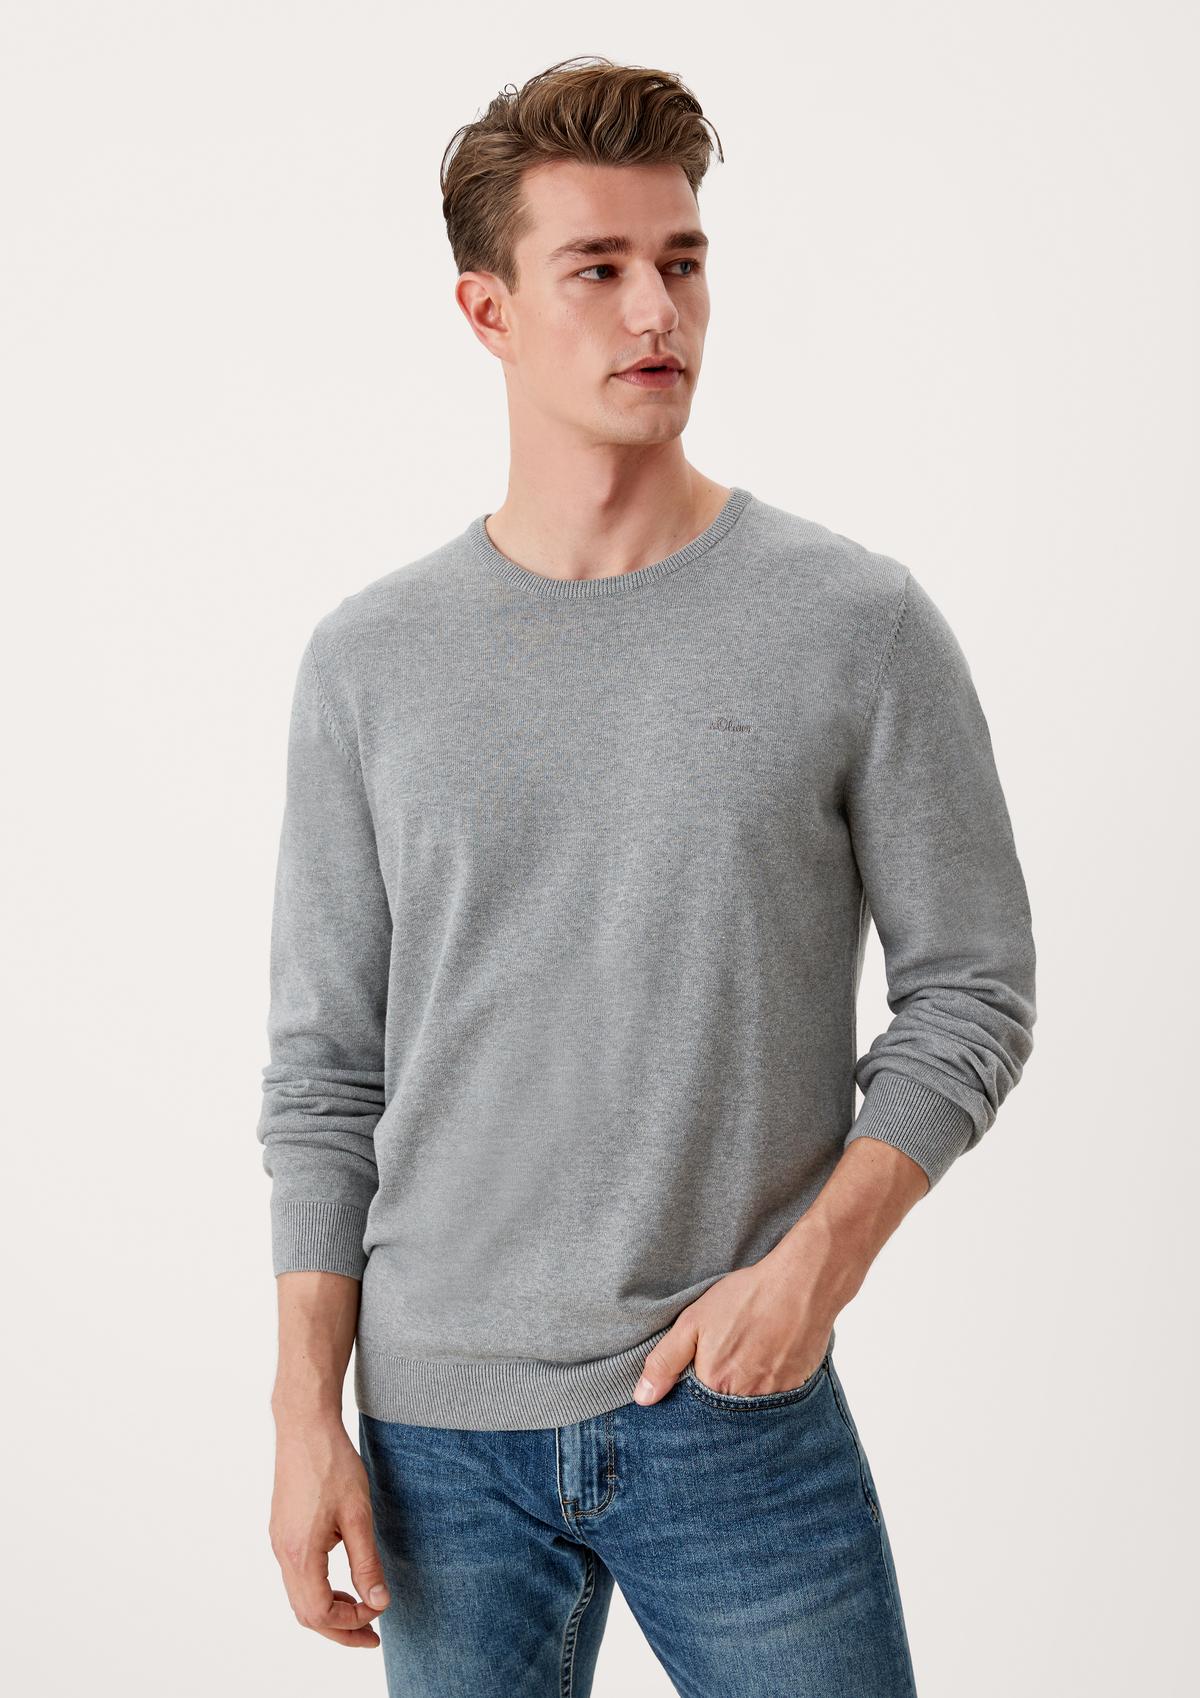 Herren Pullover im Basic-Look online kaufen